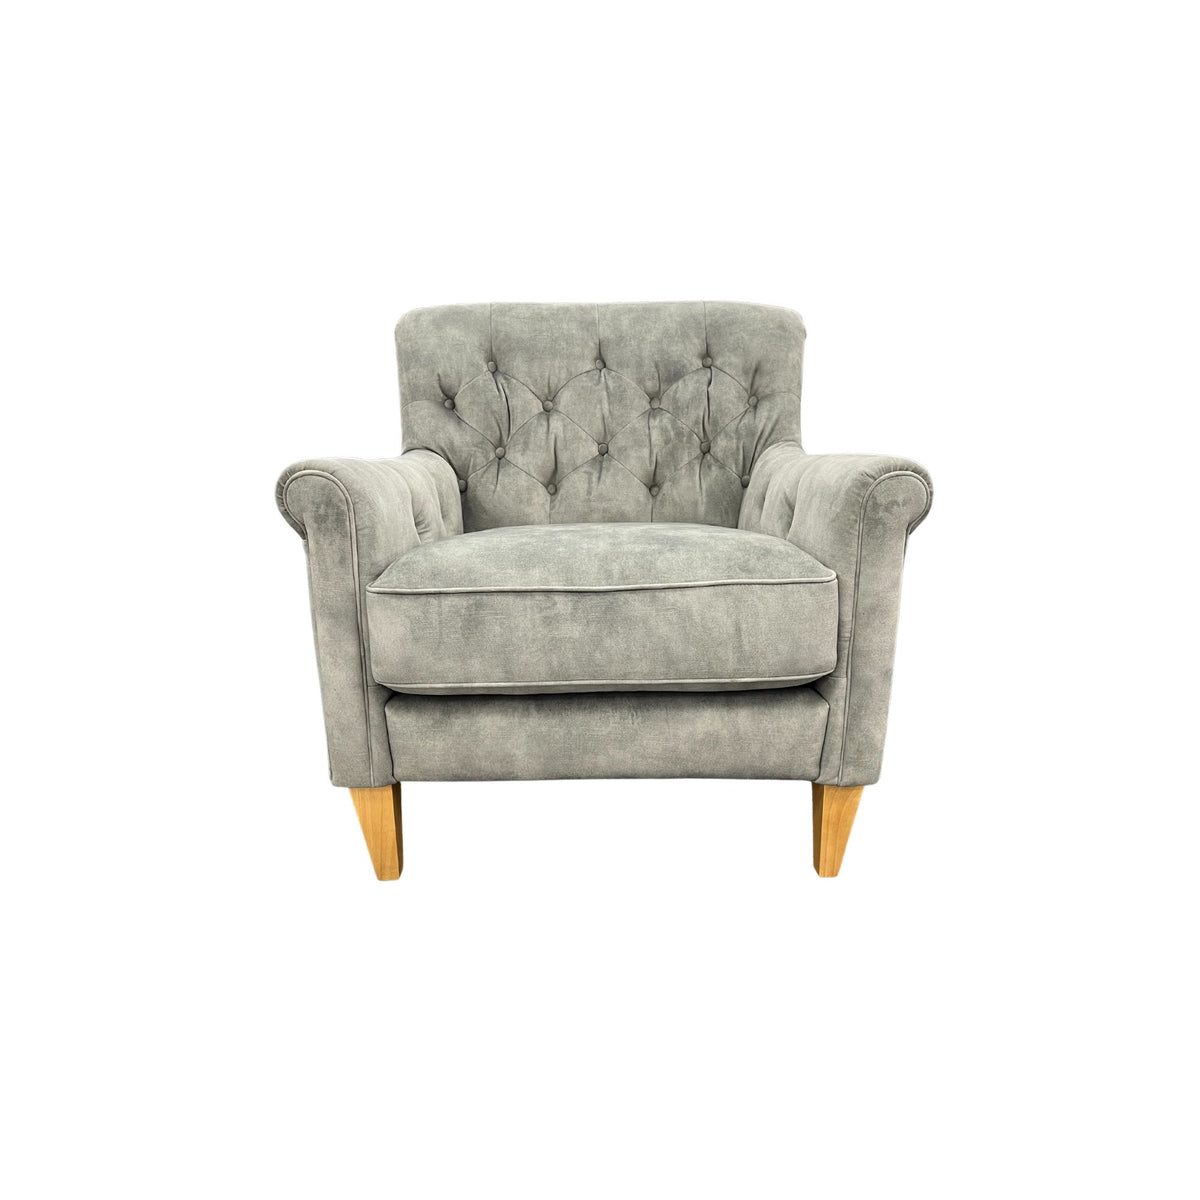 Captains Club Chair - Urban Sofa - Misty Grey Velvet Fabric